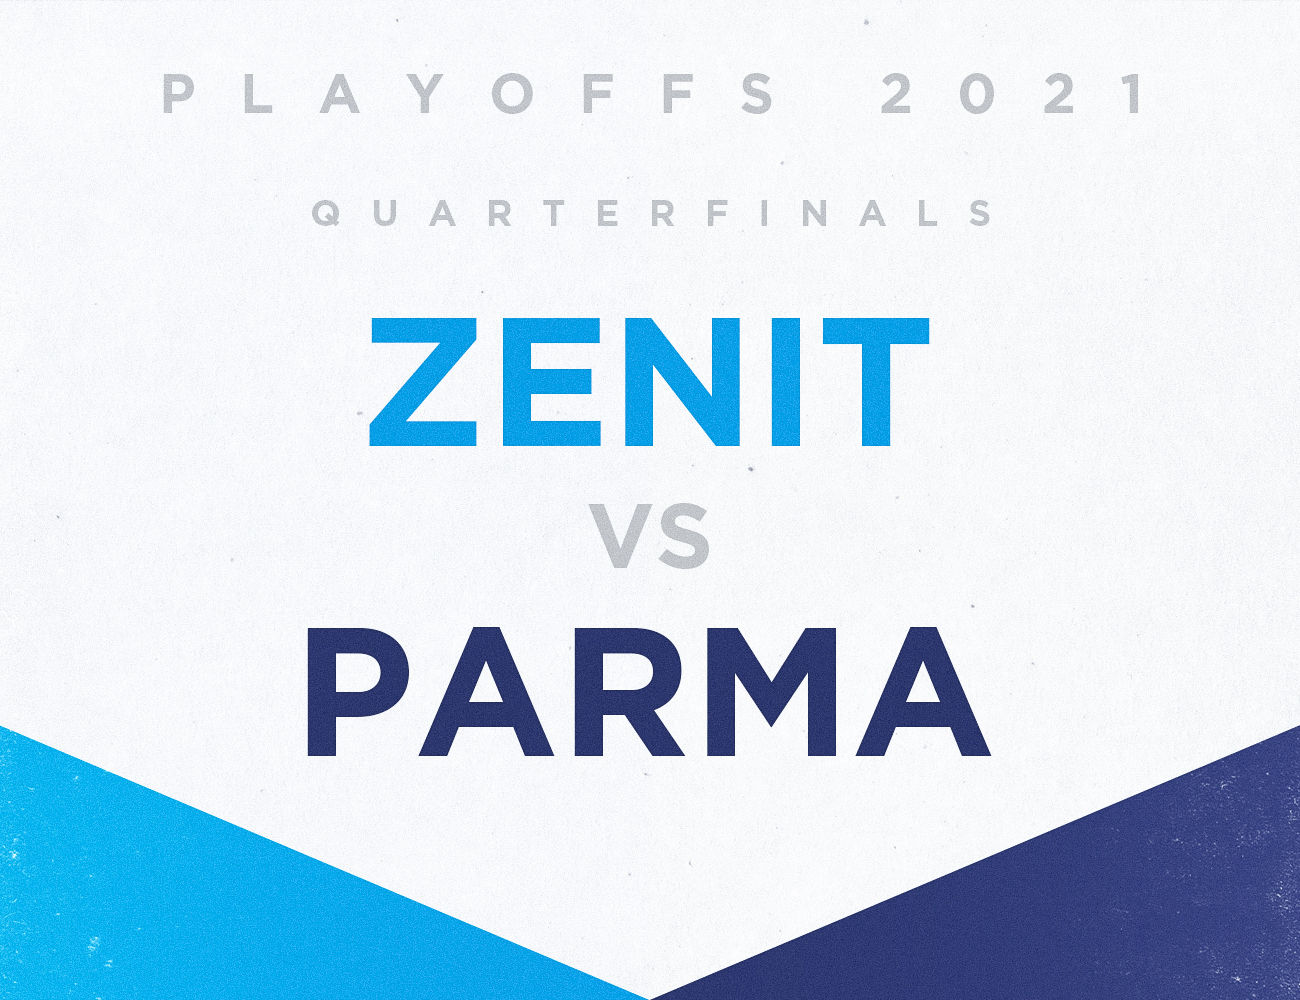 Quarterfinals. Zenit (1) vs PARMA (8)